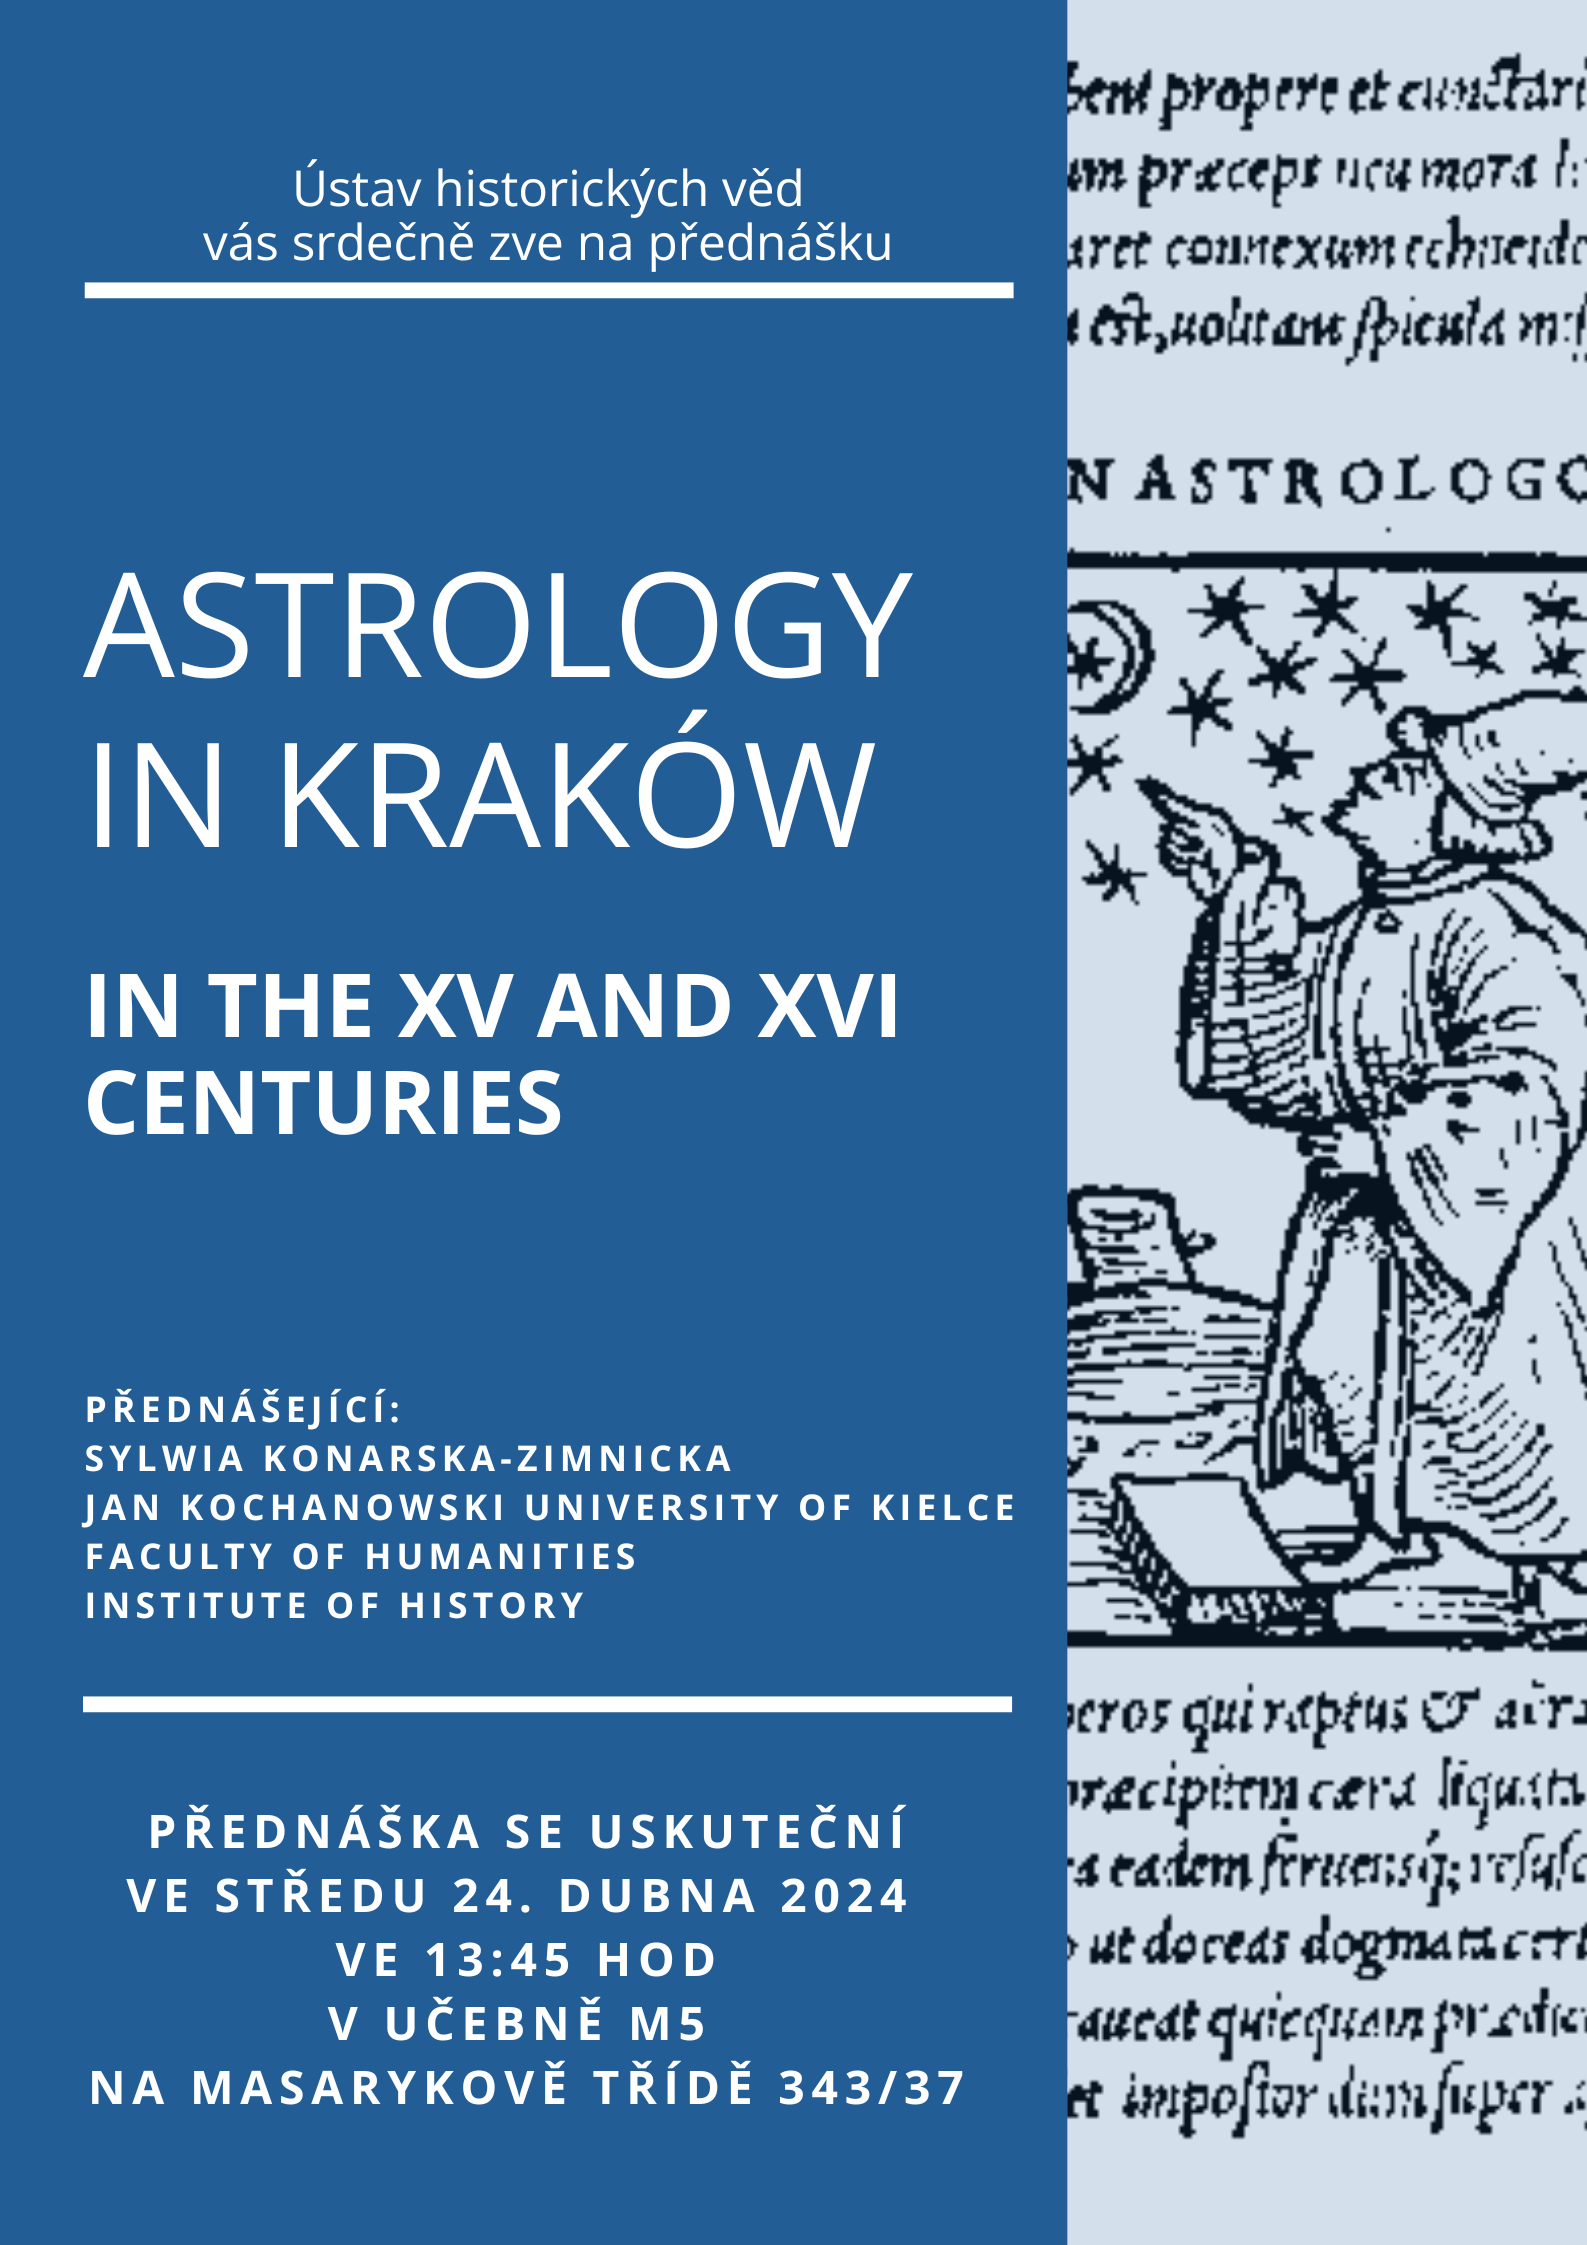 Pozvánka na přednášku prof. Sylwie Konarské-Zimnické – Astrology in Kraków in the XV and XVI centuries